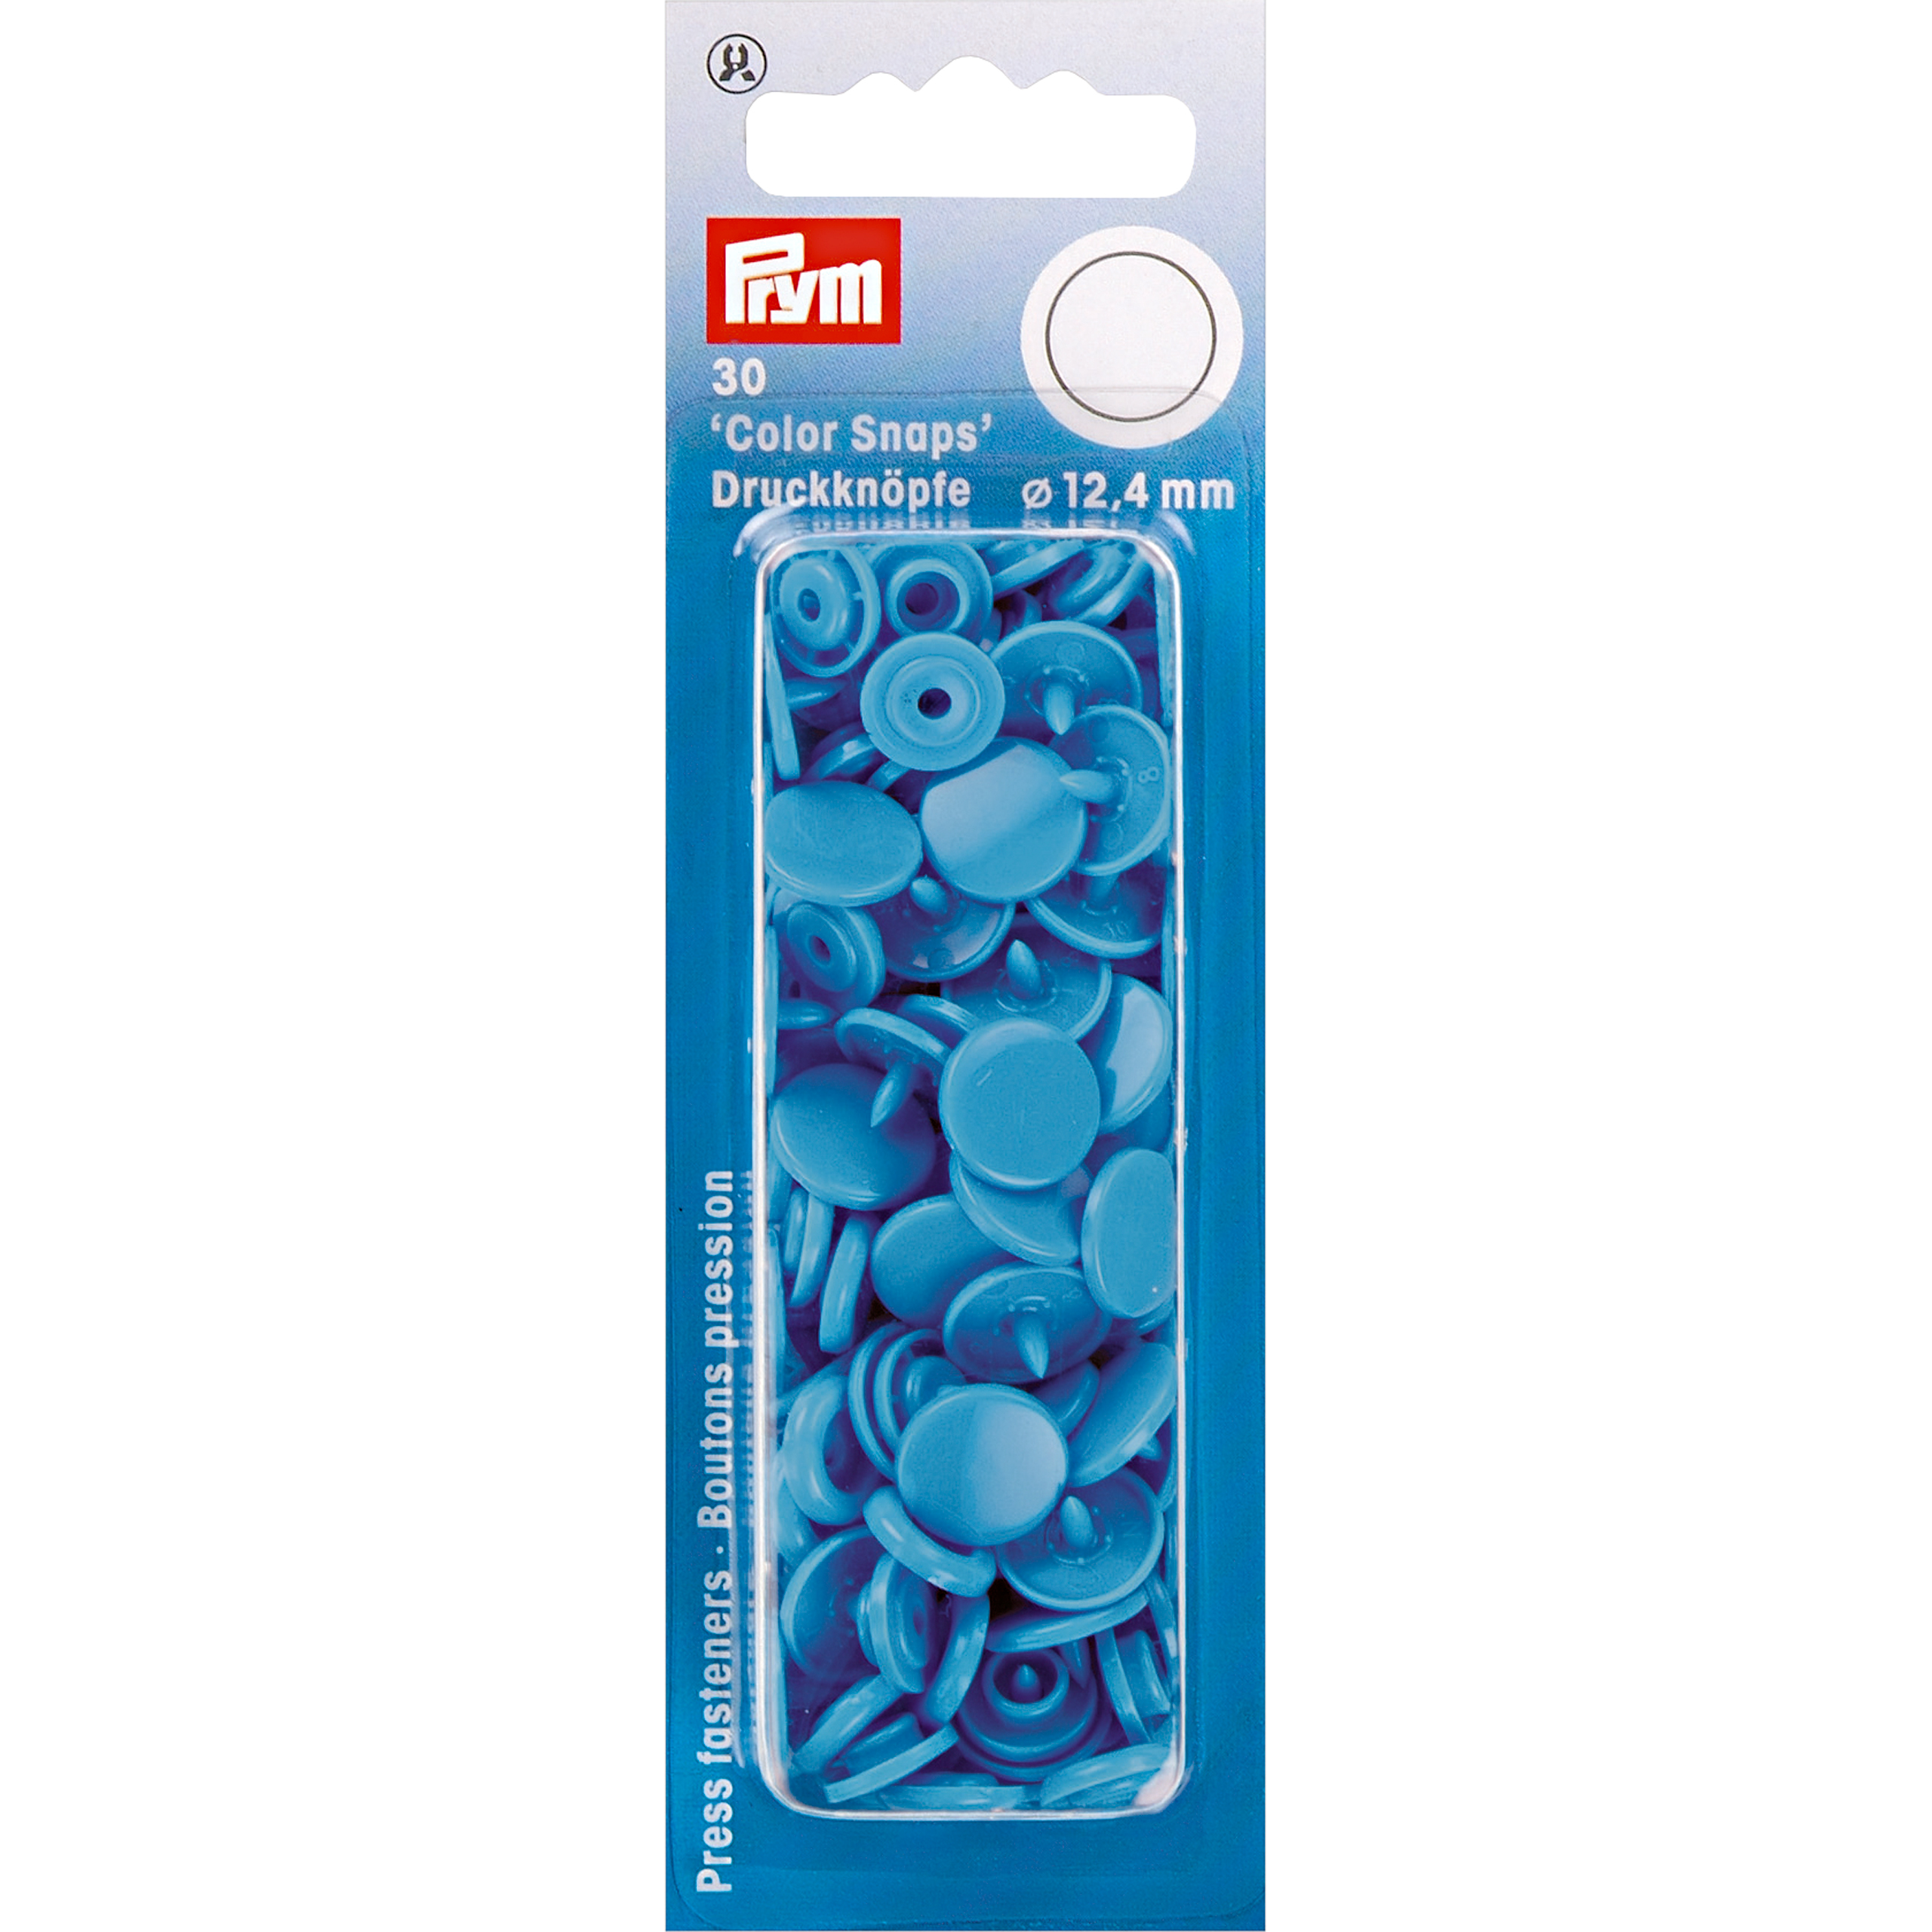 Nähfrei-Druckknöpfe Color Snaps rund 12,4 mm 30 St von Prym stahlblau